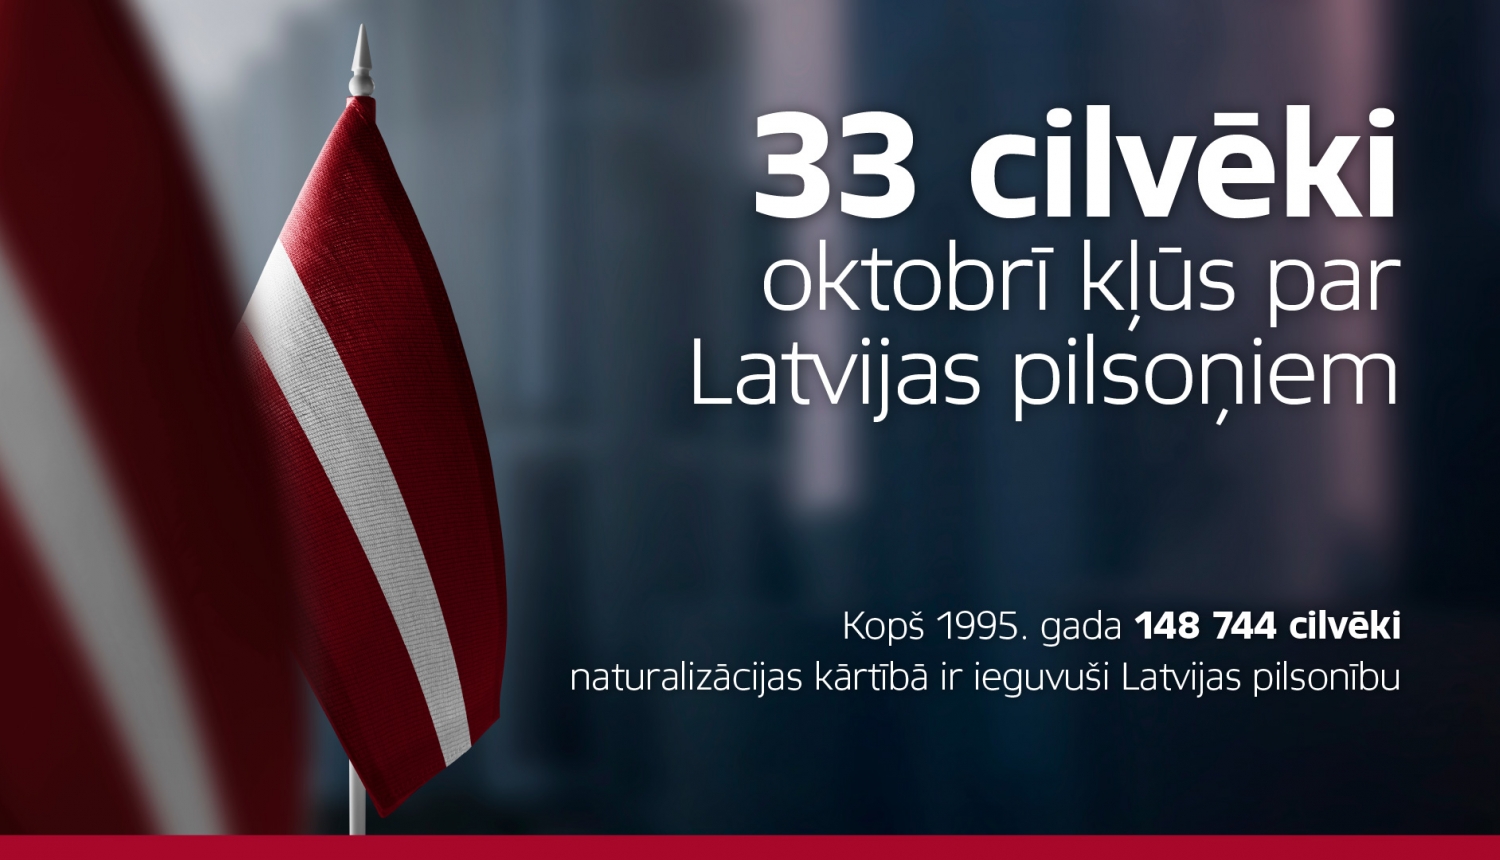 Tumšs miglots fons aizmugurē un priekšplānā Latvijas karodziņi